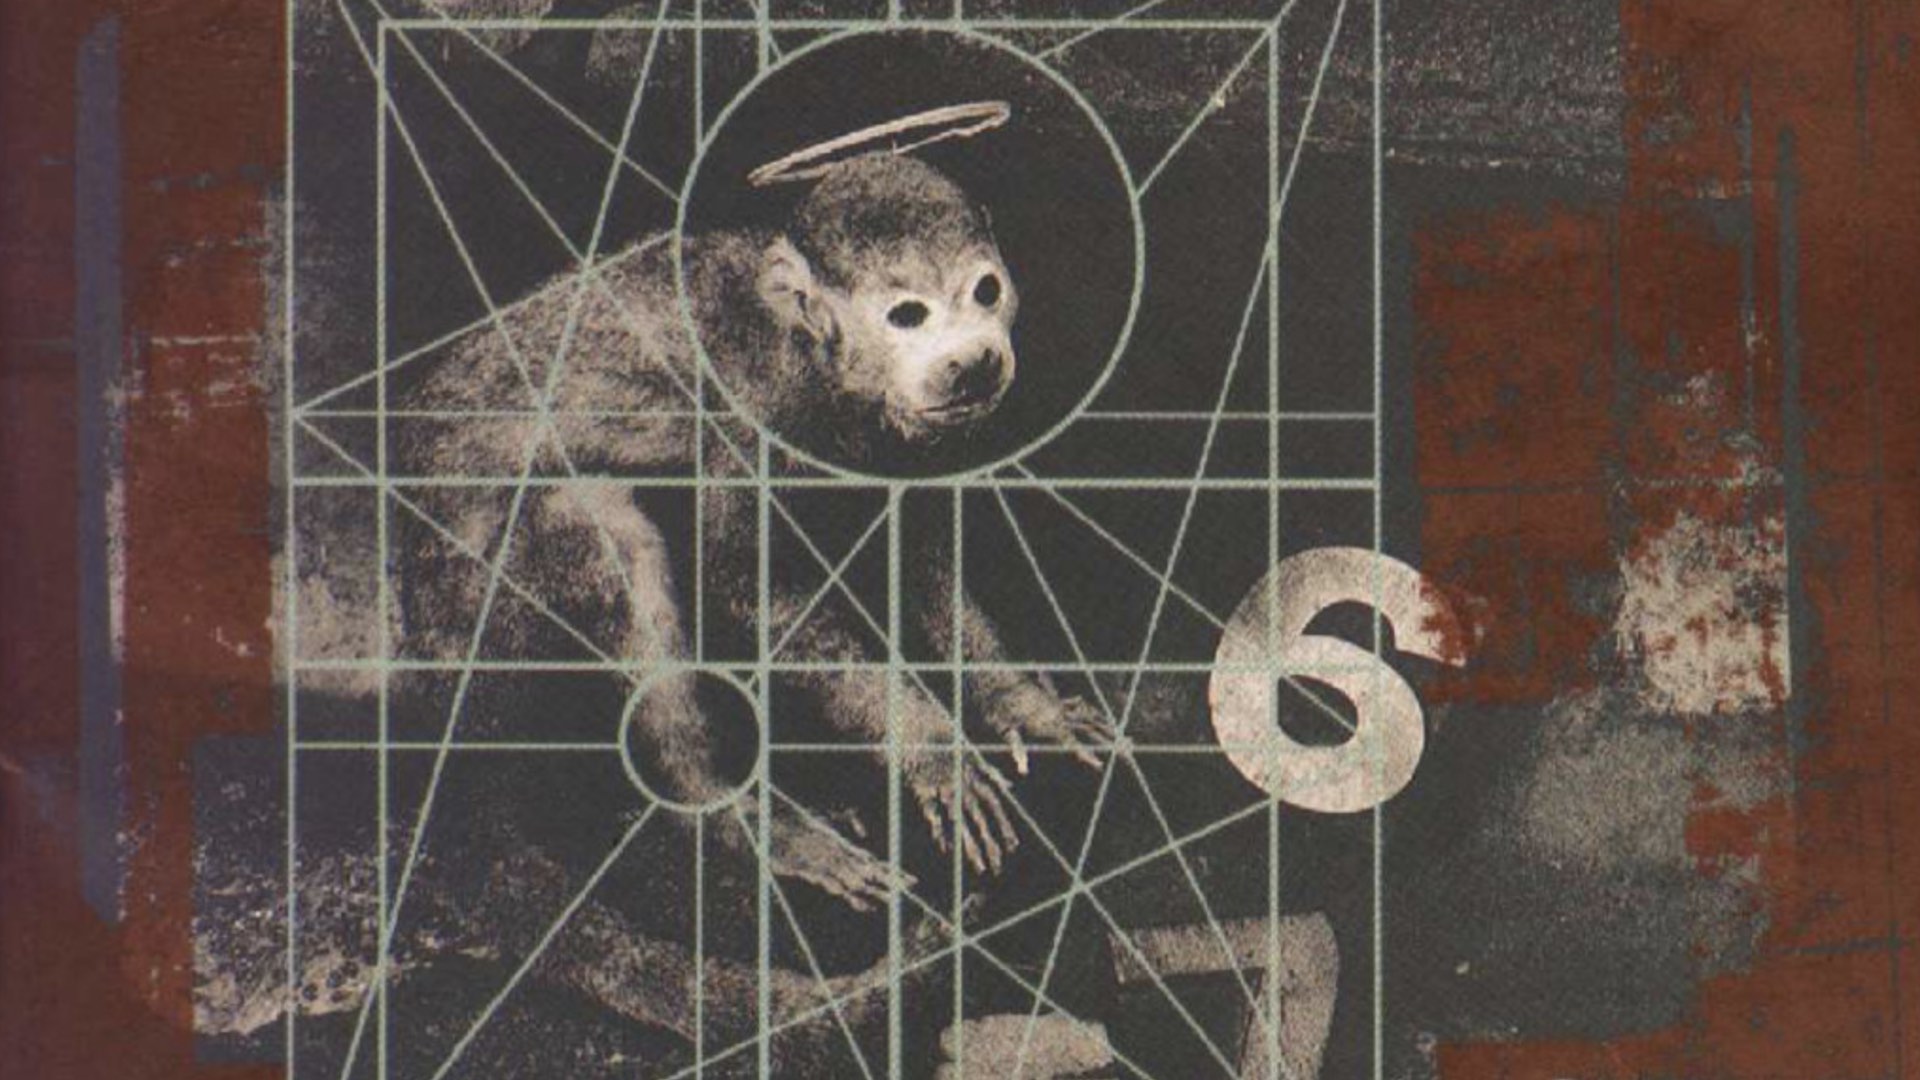 Pixies, "Doolittle" (1989), label : 4AD